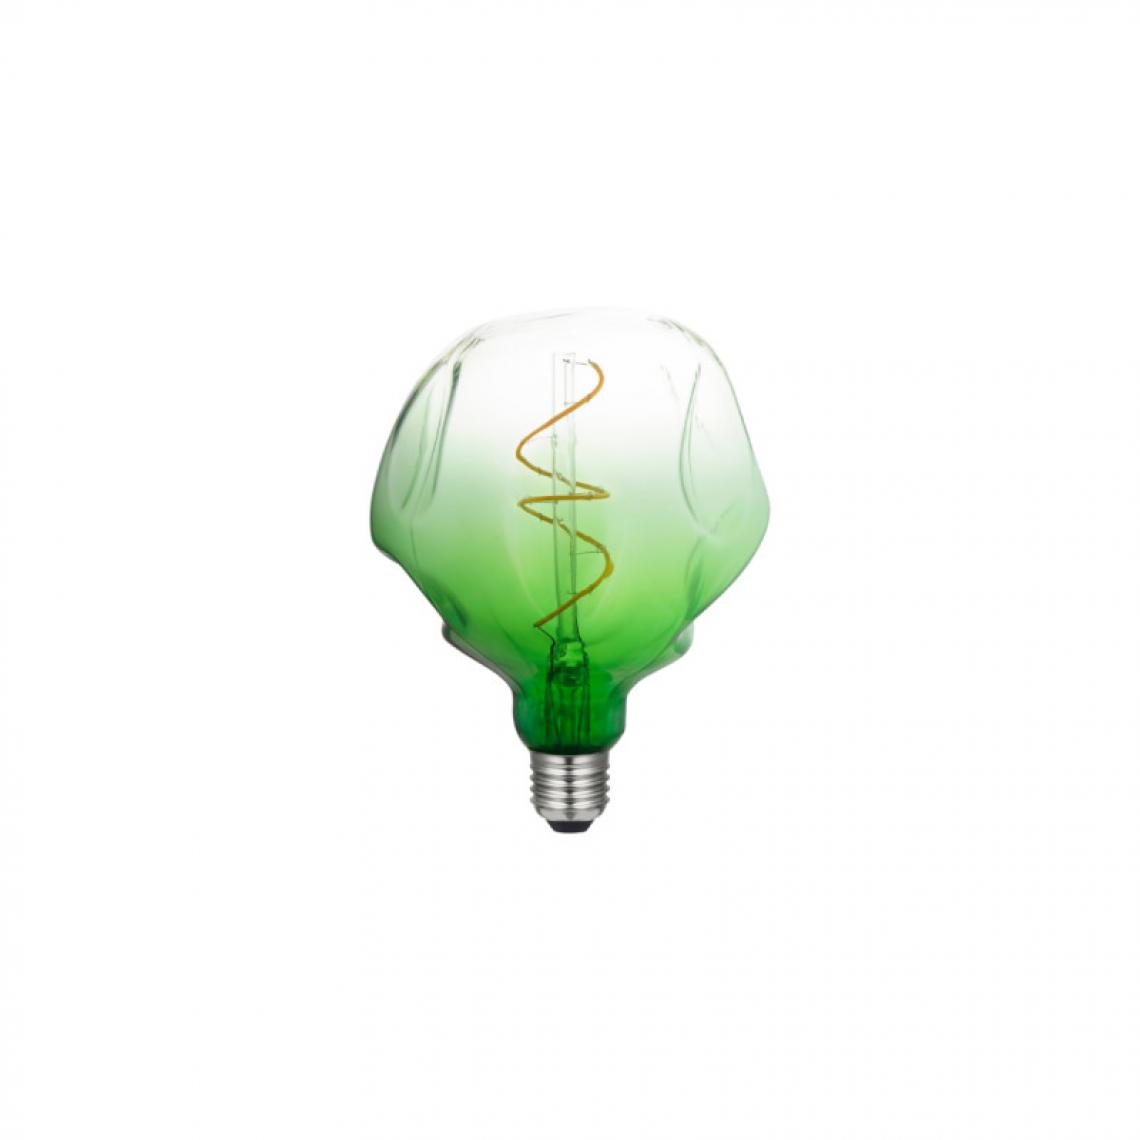 Xxcell - Ampoule LED décorative verte XXCELL - 4 W - 200 lumens - 2500 K - E27 - Ampoules LED